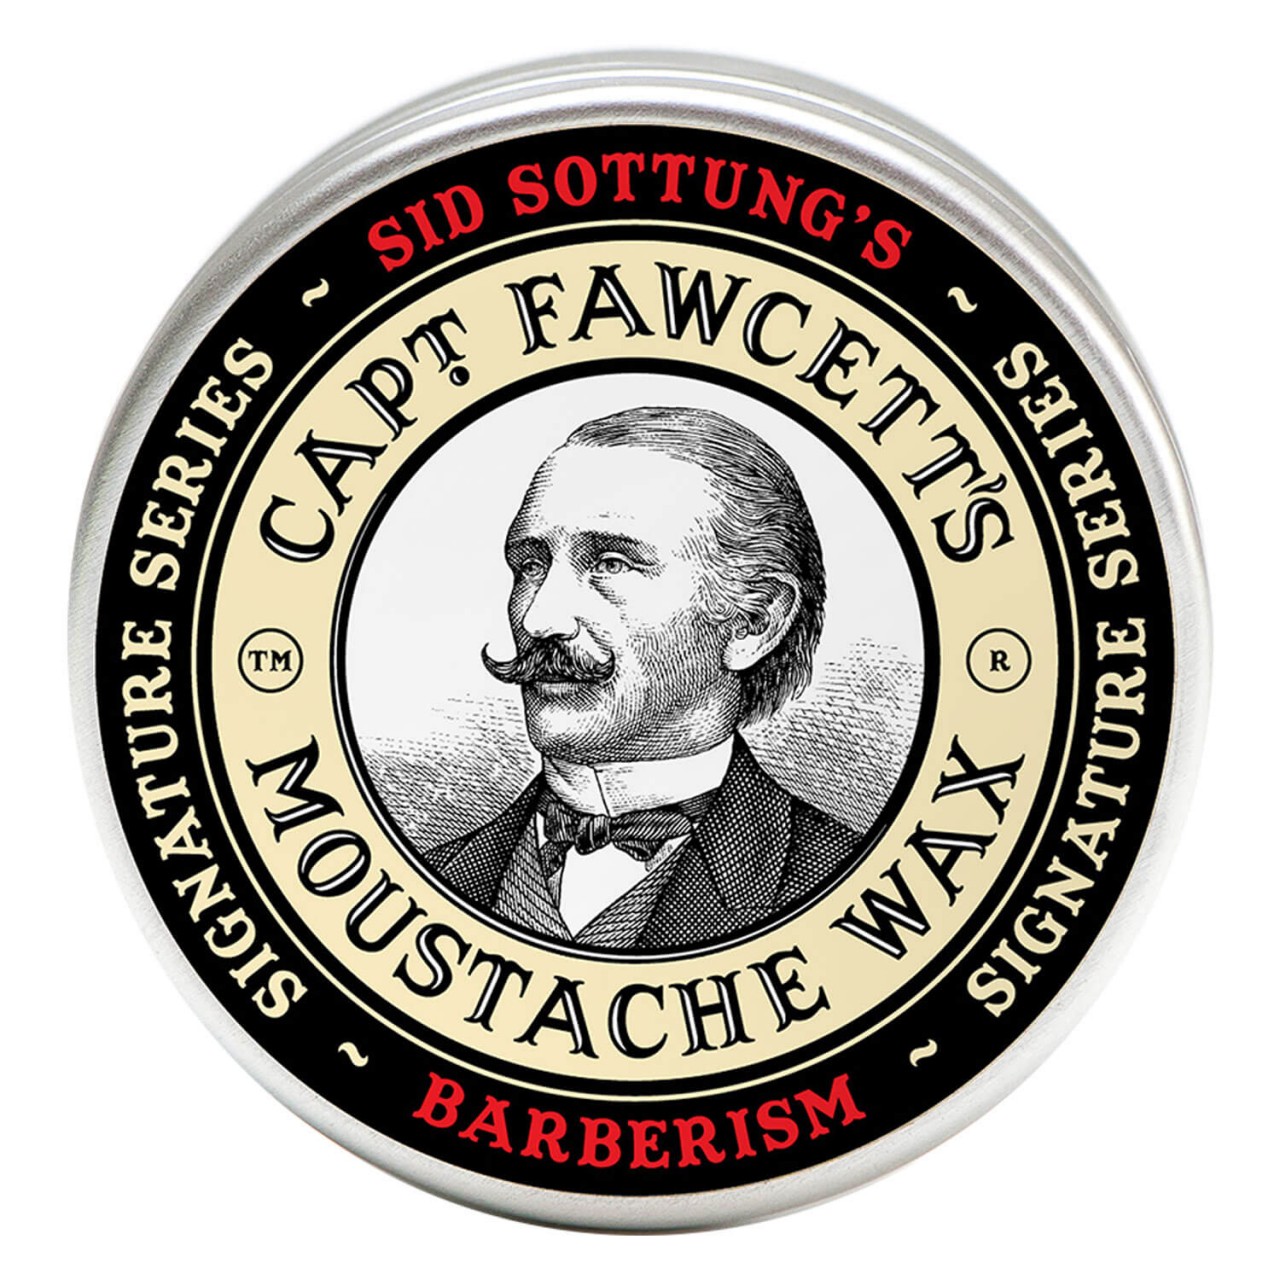 Capt. Fawcett Care - Sid Sottung's Barberism Moustache Wax von Captain Fawcett